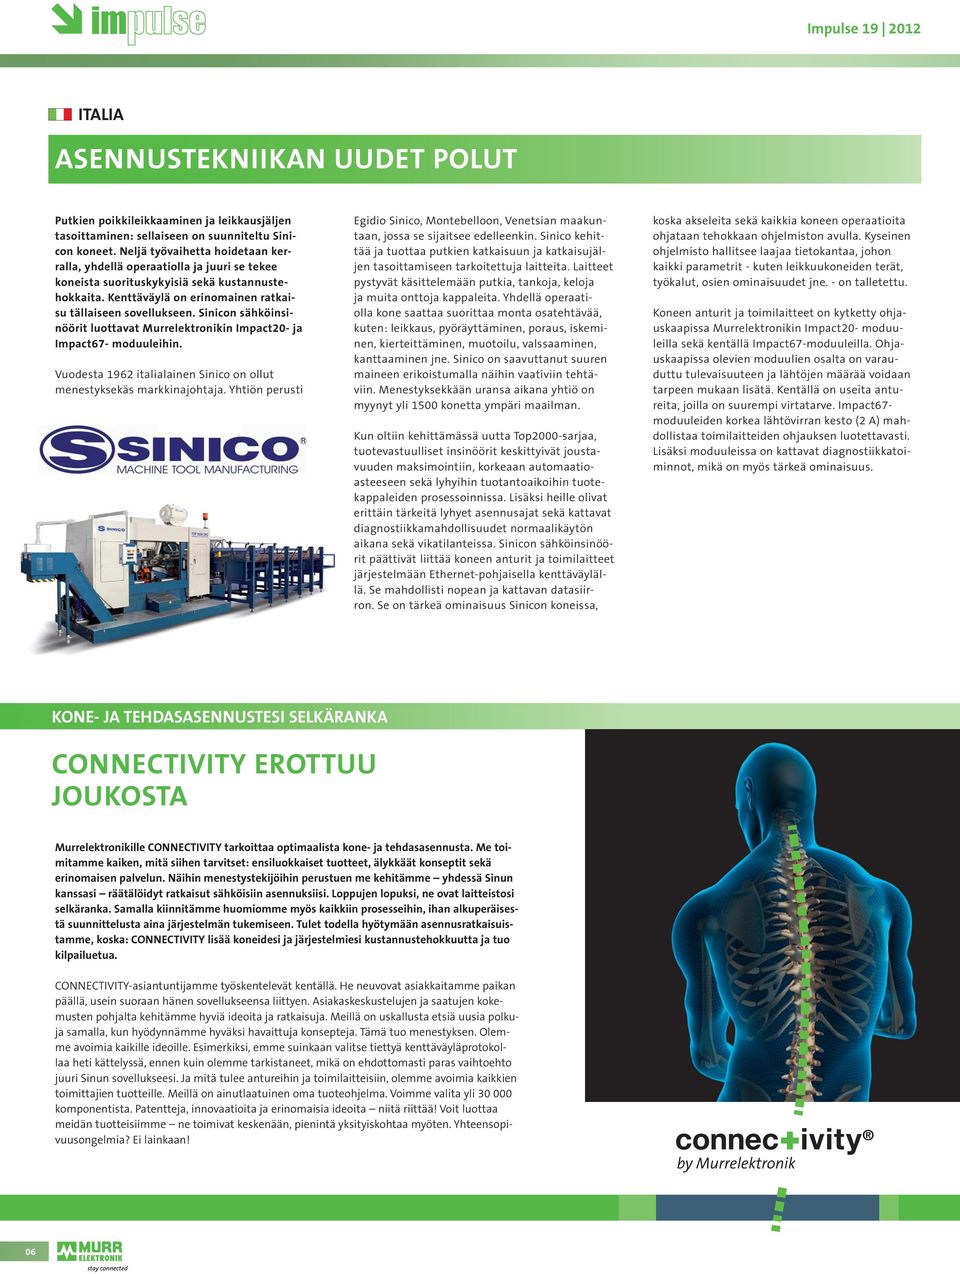 Sinicon sähköinsinöörit luottavat Murrelektronikin Impact20- ja Impact67- moduuleihin. Vuodesta 1962 italialainen Sinico on ollut menestyksekäs markkinajohtaja.